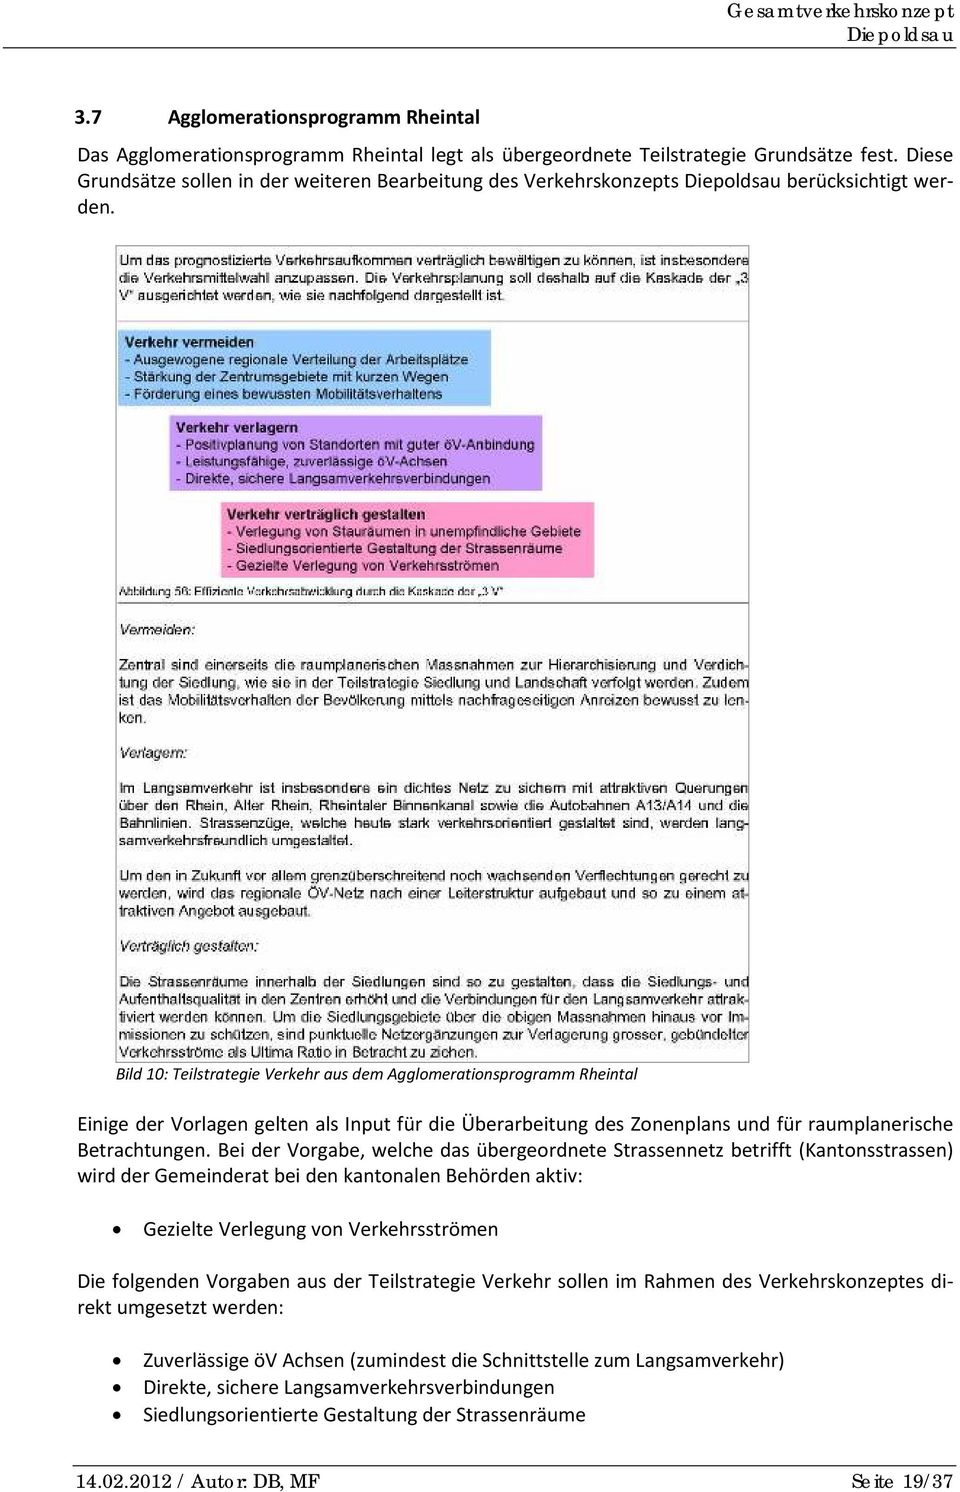 Bild 10: Teilstrategie Verkehr aus dem Agglomerationsprogramm Rheintal Einige der Vorlagen gelten als Input für die Überarbeitung des Zonenplans und für raumplanerische Betrachtungen.